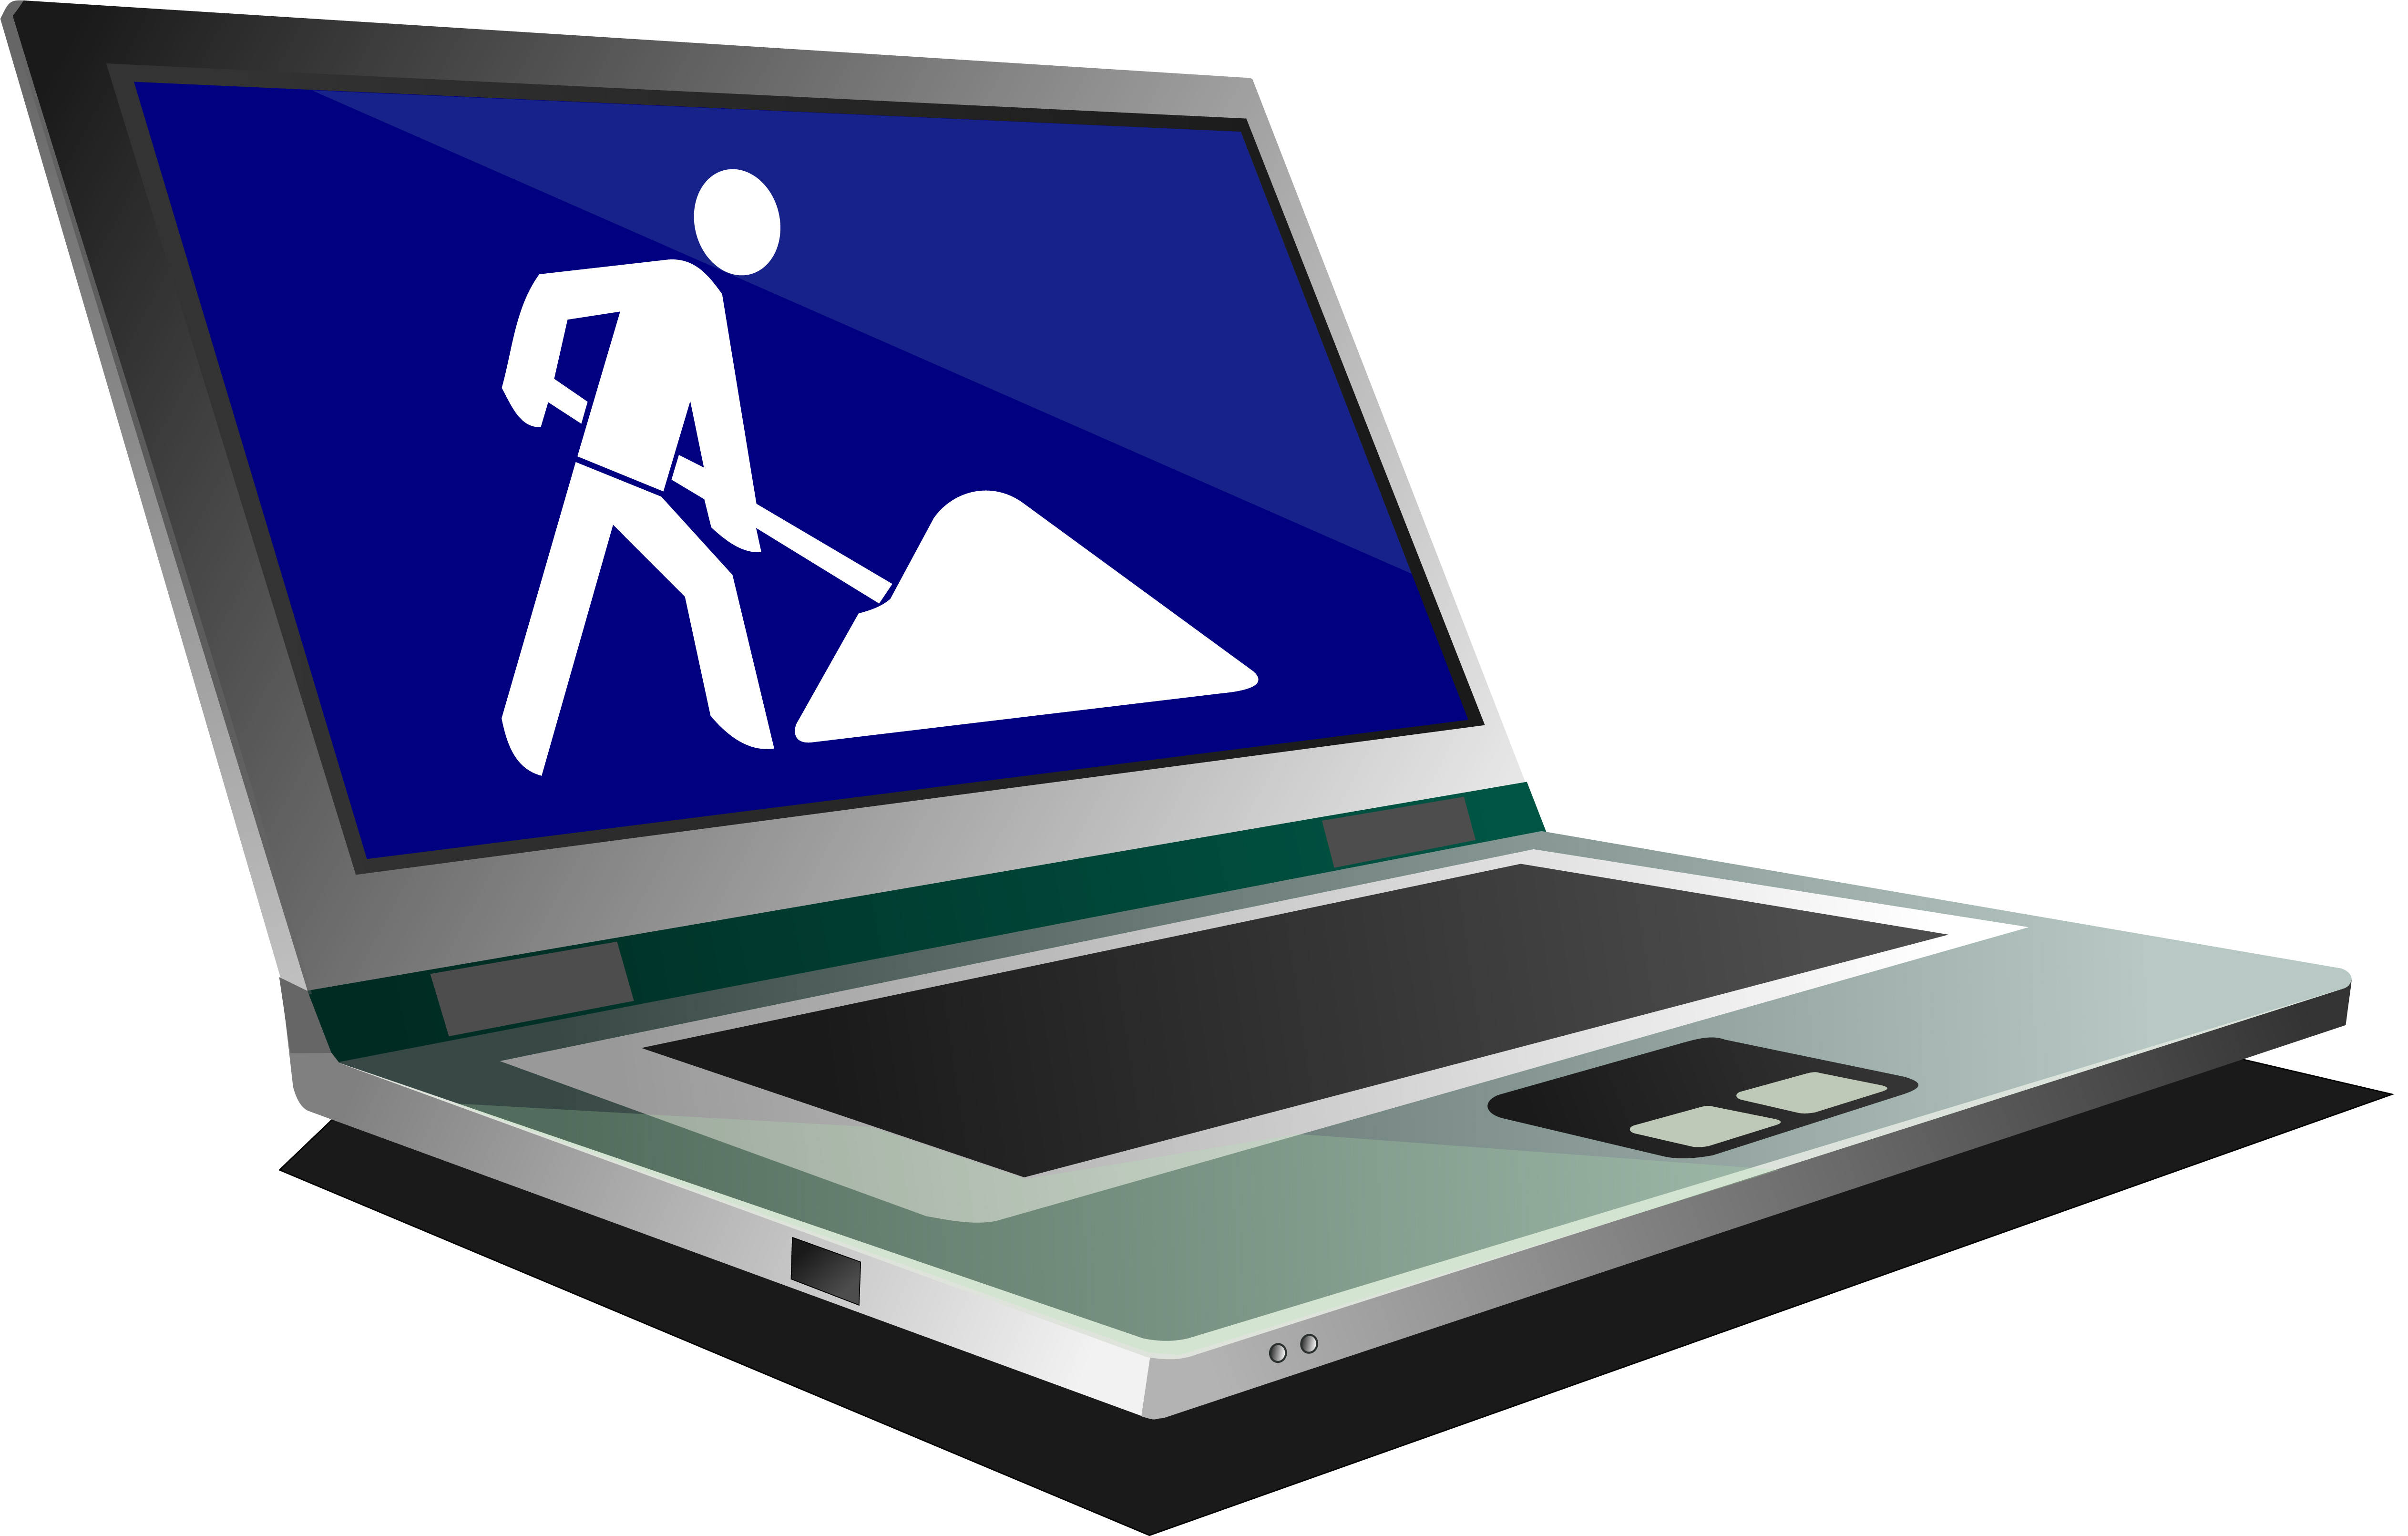 Grafik eines Laptops, auf dessen Bildschirm das blau-weiße Piktogramm einer Baustelle zu sehen ist.